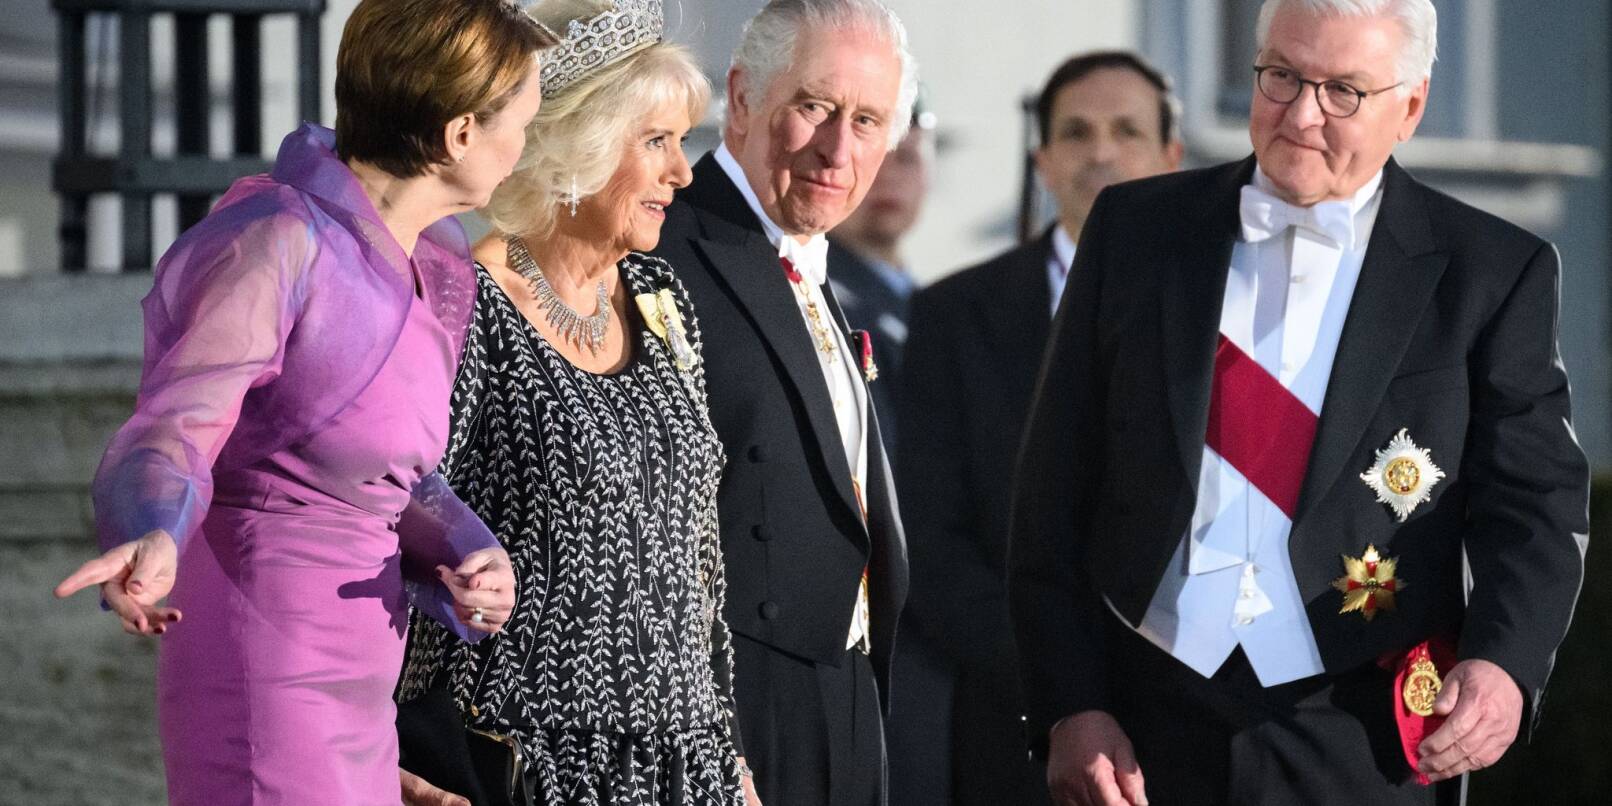 Zum Ausklang des ersten Tages ihres Staatsbesuchs sind König Charles III. und seine Frau Camilla zum Staatsbankett in Schloss Bellevue eingetroffen. Bundespräsident Frank-Walter Steinmeier und seine Frau Elke Büdenbender haben das Königspaar empfangen.